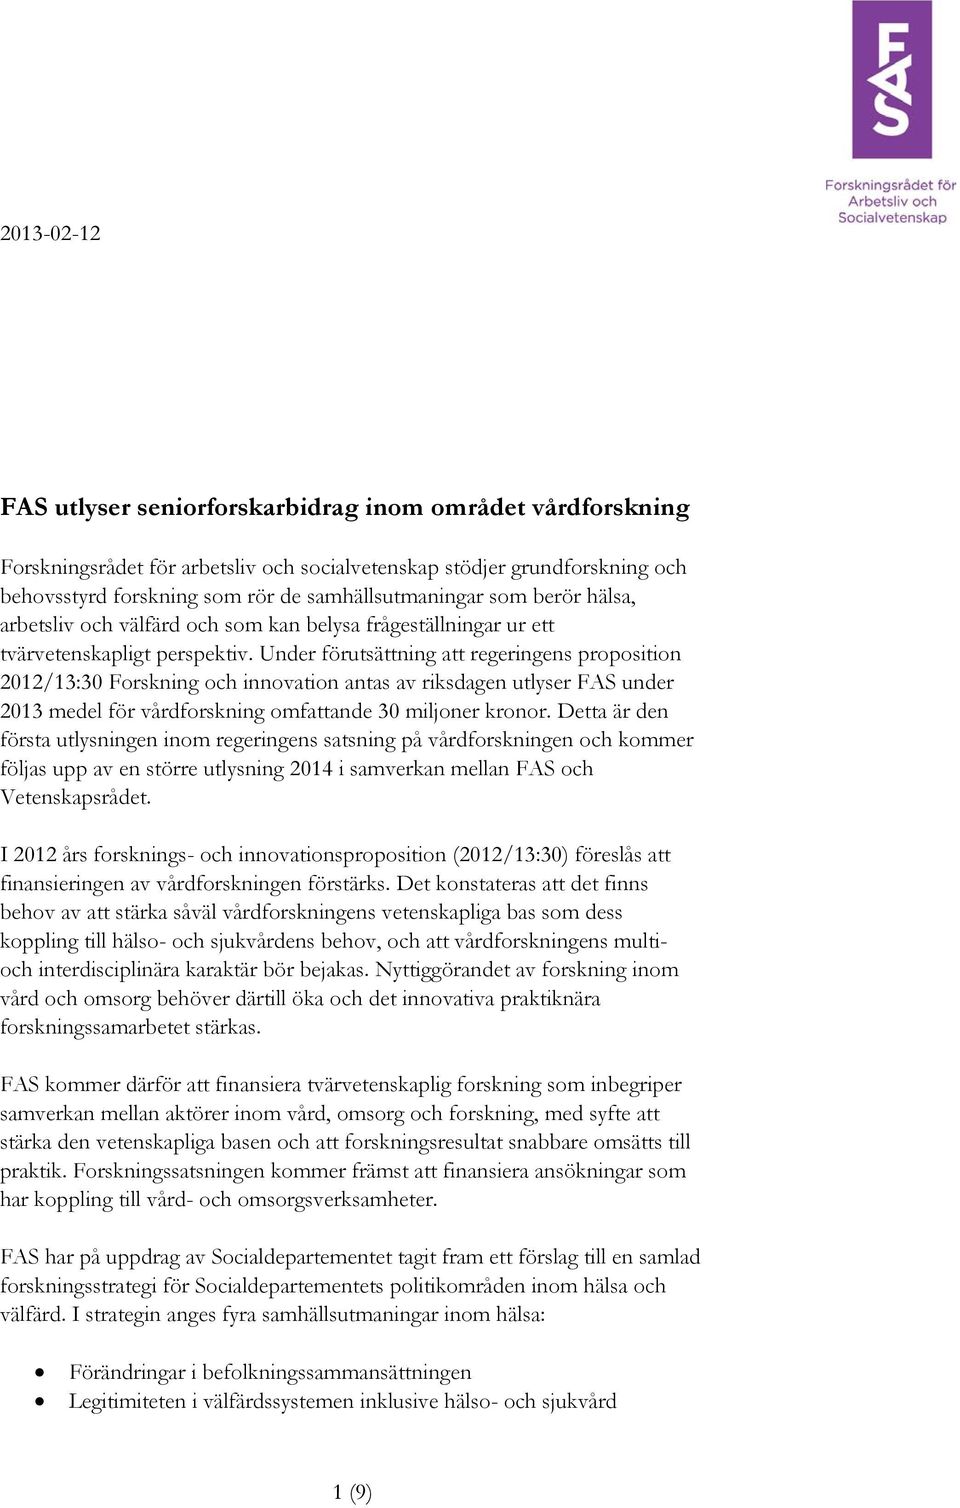 Under förutsättning att regeringens proposition 2012/13:30 Forskning och innovation antas av riksdagen utlyser FAS under 2013 medel för vårdforskning omfattande 30 miljoner kronor.